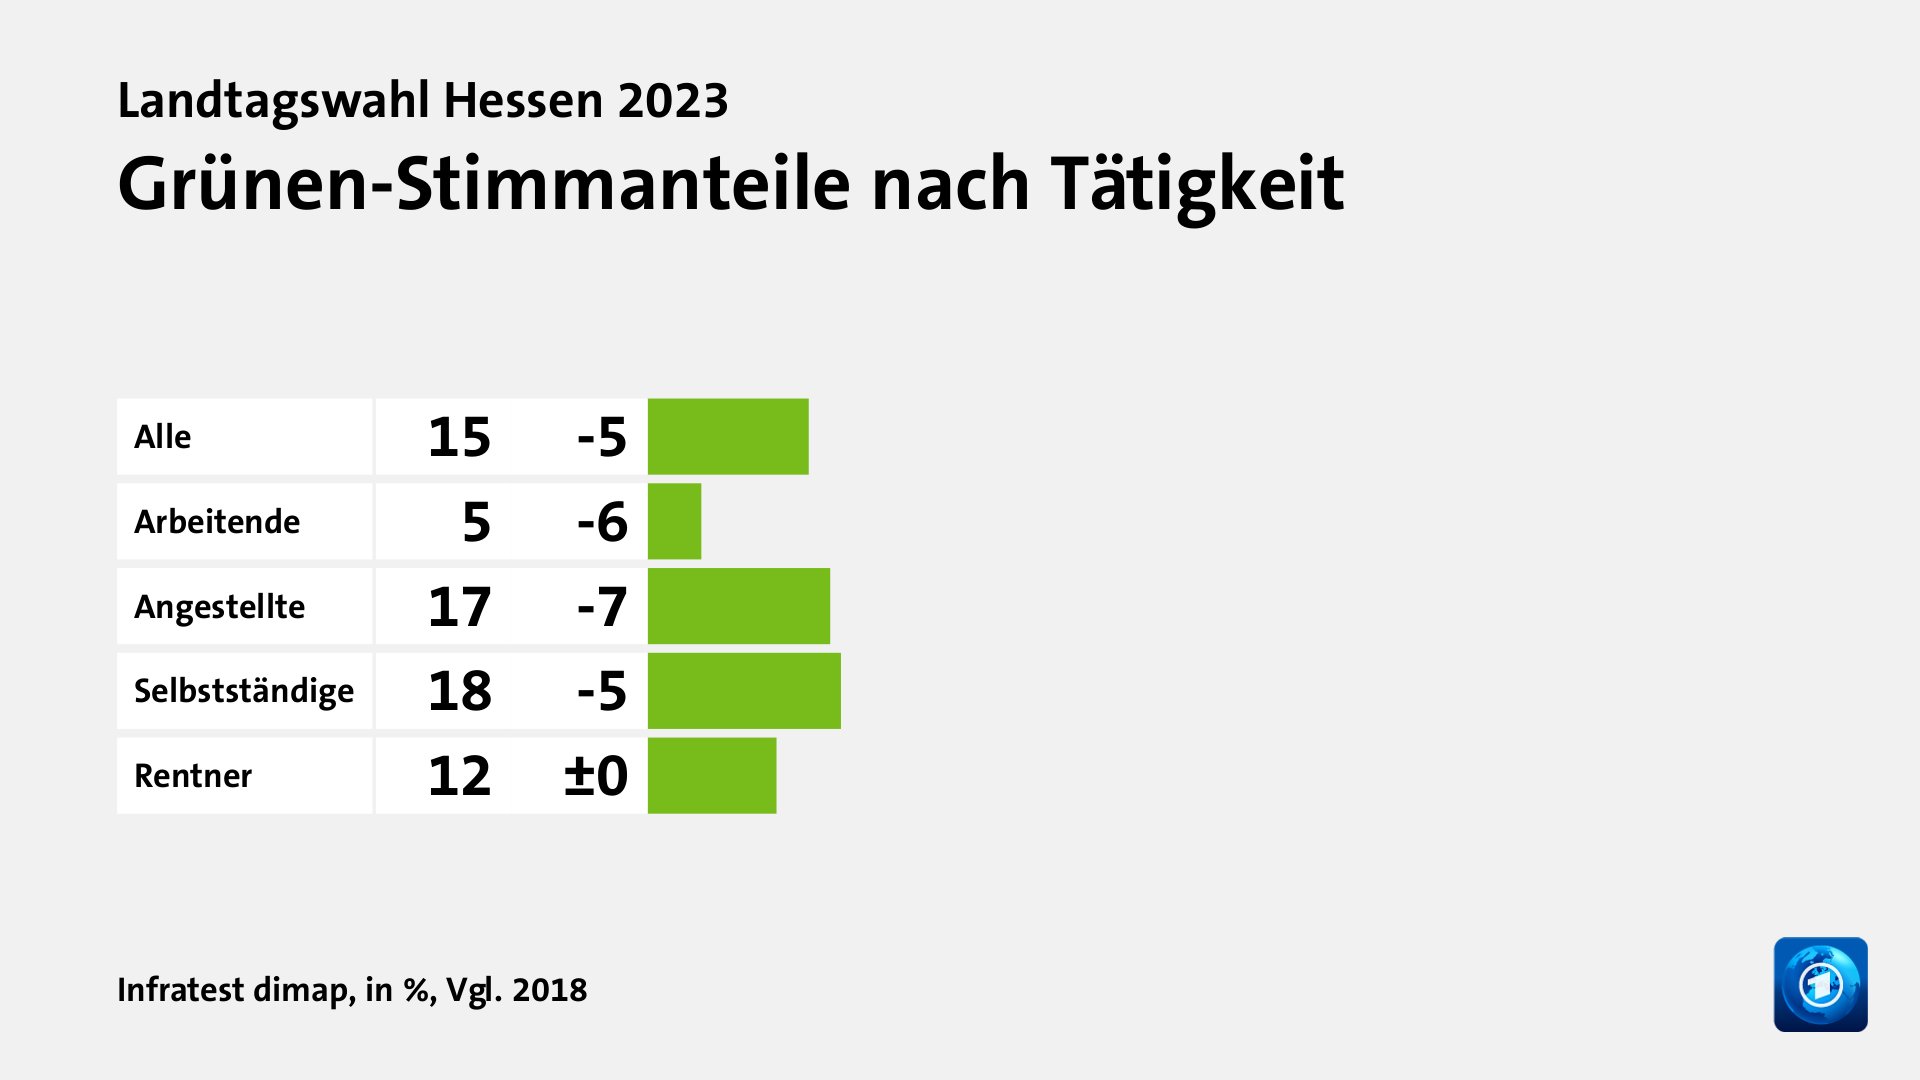 Grünen-Stimmanteile nach Tätigkeit, in %, Vgl. 2018: Alle 15, Arbeitende 5, Angestellte 17, Selbstständige 18, Rentner 12, Quelle: Infratest dimap